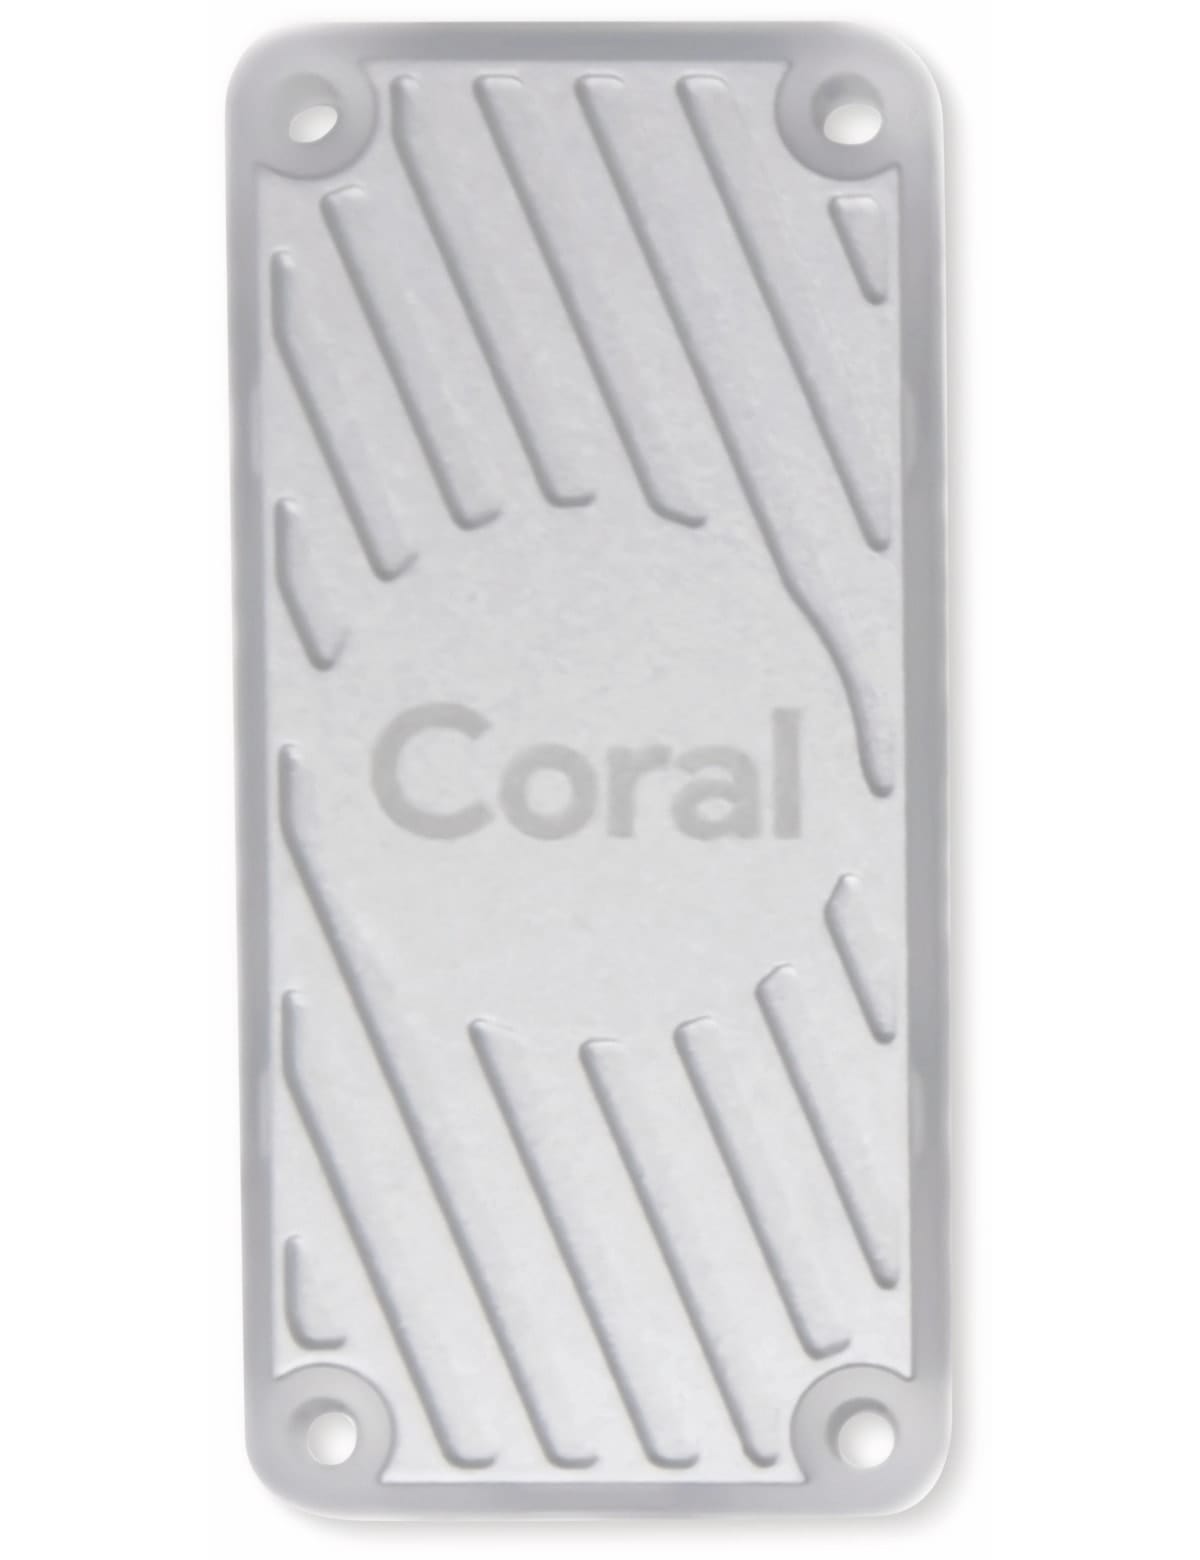 GOOGLE CORAL USB Accelerator: USB Koprozessor für maschinelles Lernen